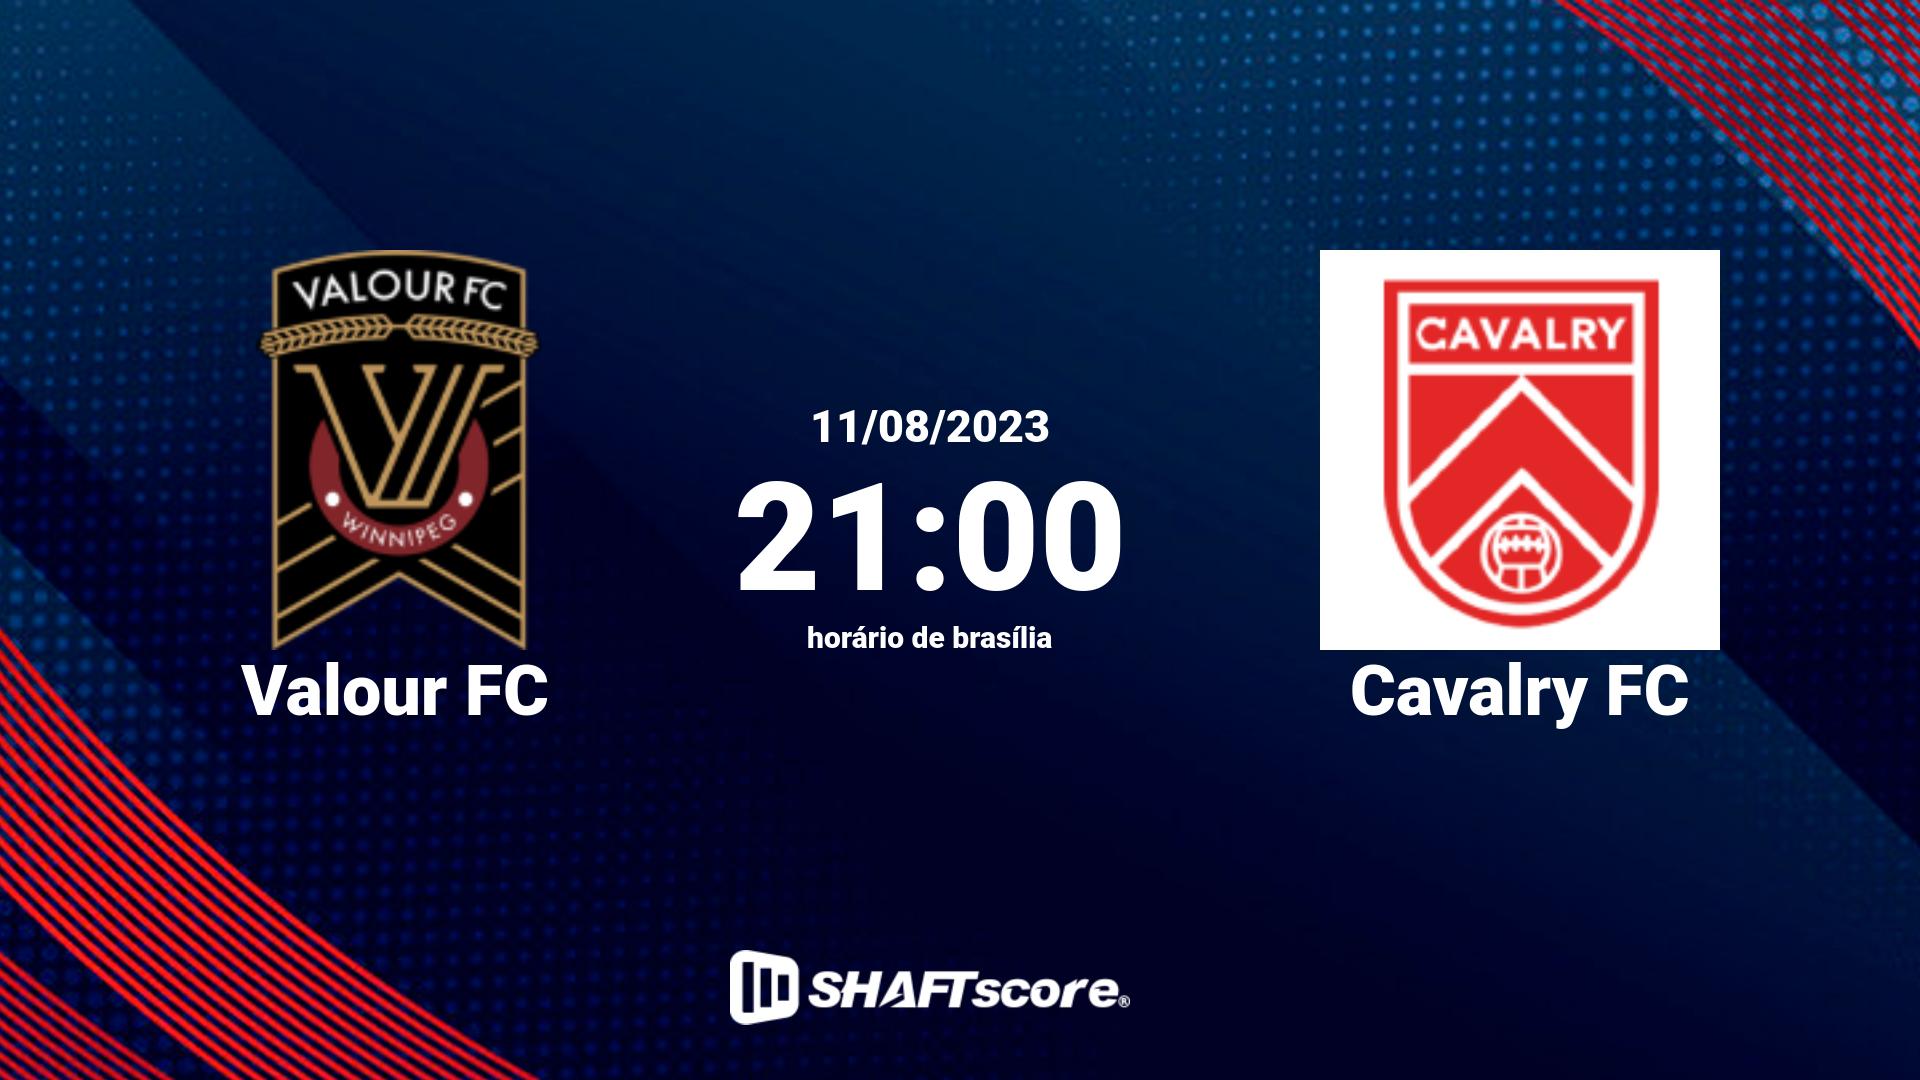 Estatísticas do jogo Valour FC vs Cavalry FC 11.08 21:00